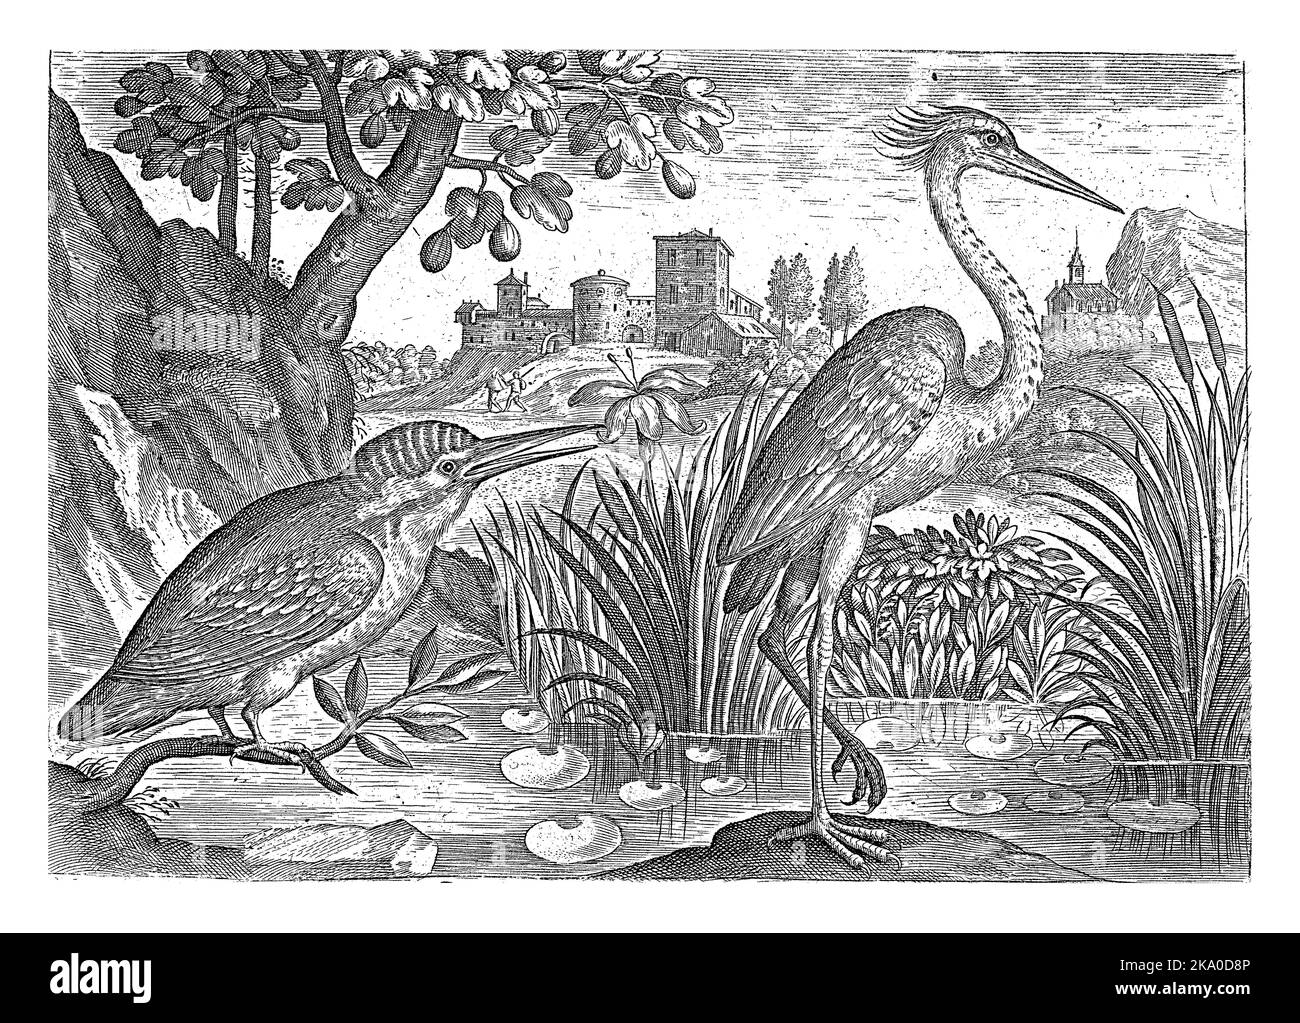 Un kingfisher et un héron bleu dans un étang. En arrière-plan une forteresse. L'impression fait partie d'une série avec des oiseaux comme sujet. Banque D'Images